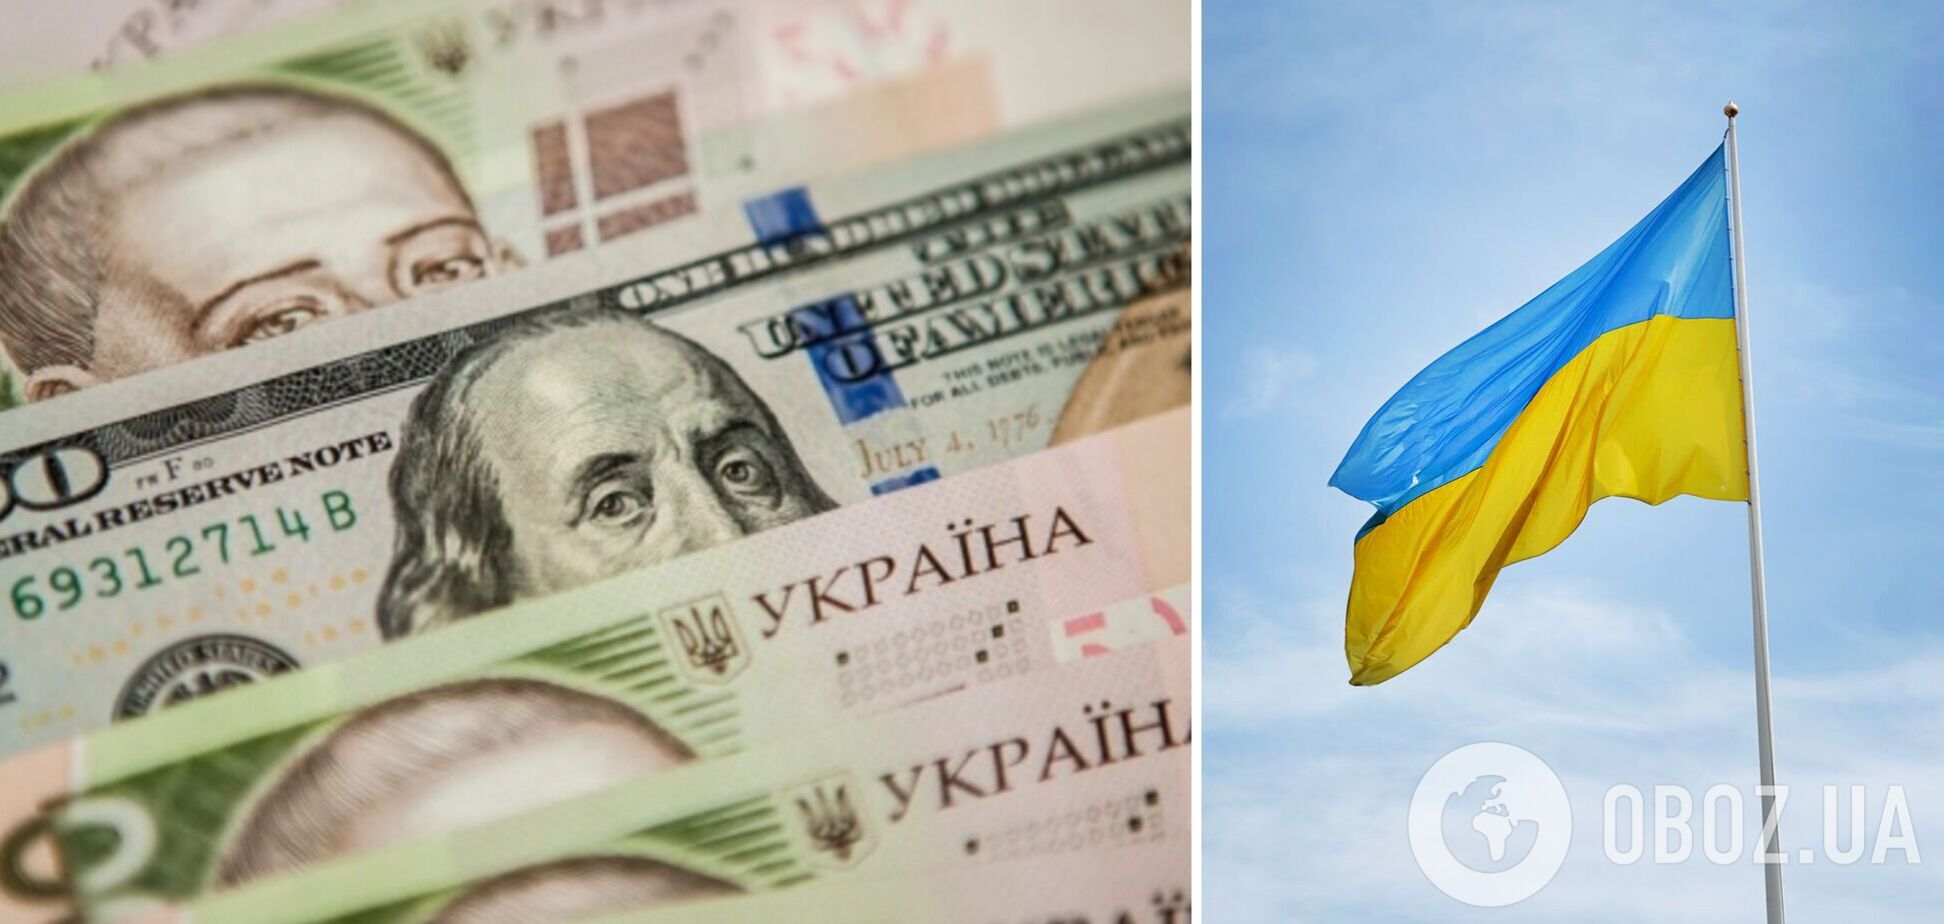 Кредитори погодяться говорити про перегляд боргів Україні не раніше кінця війни, – заступник глави ОП